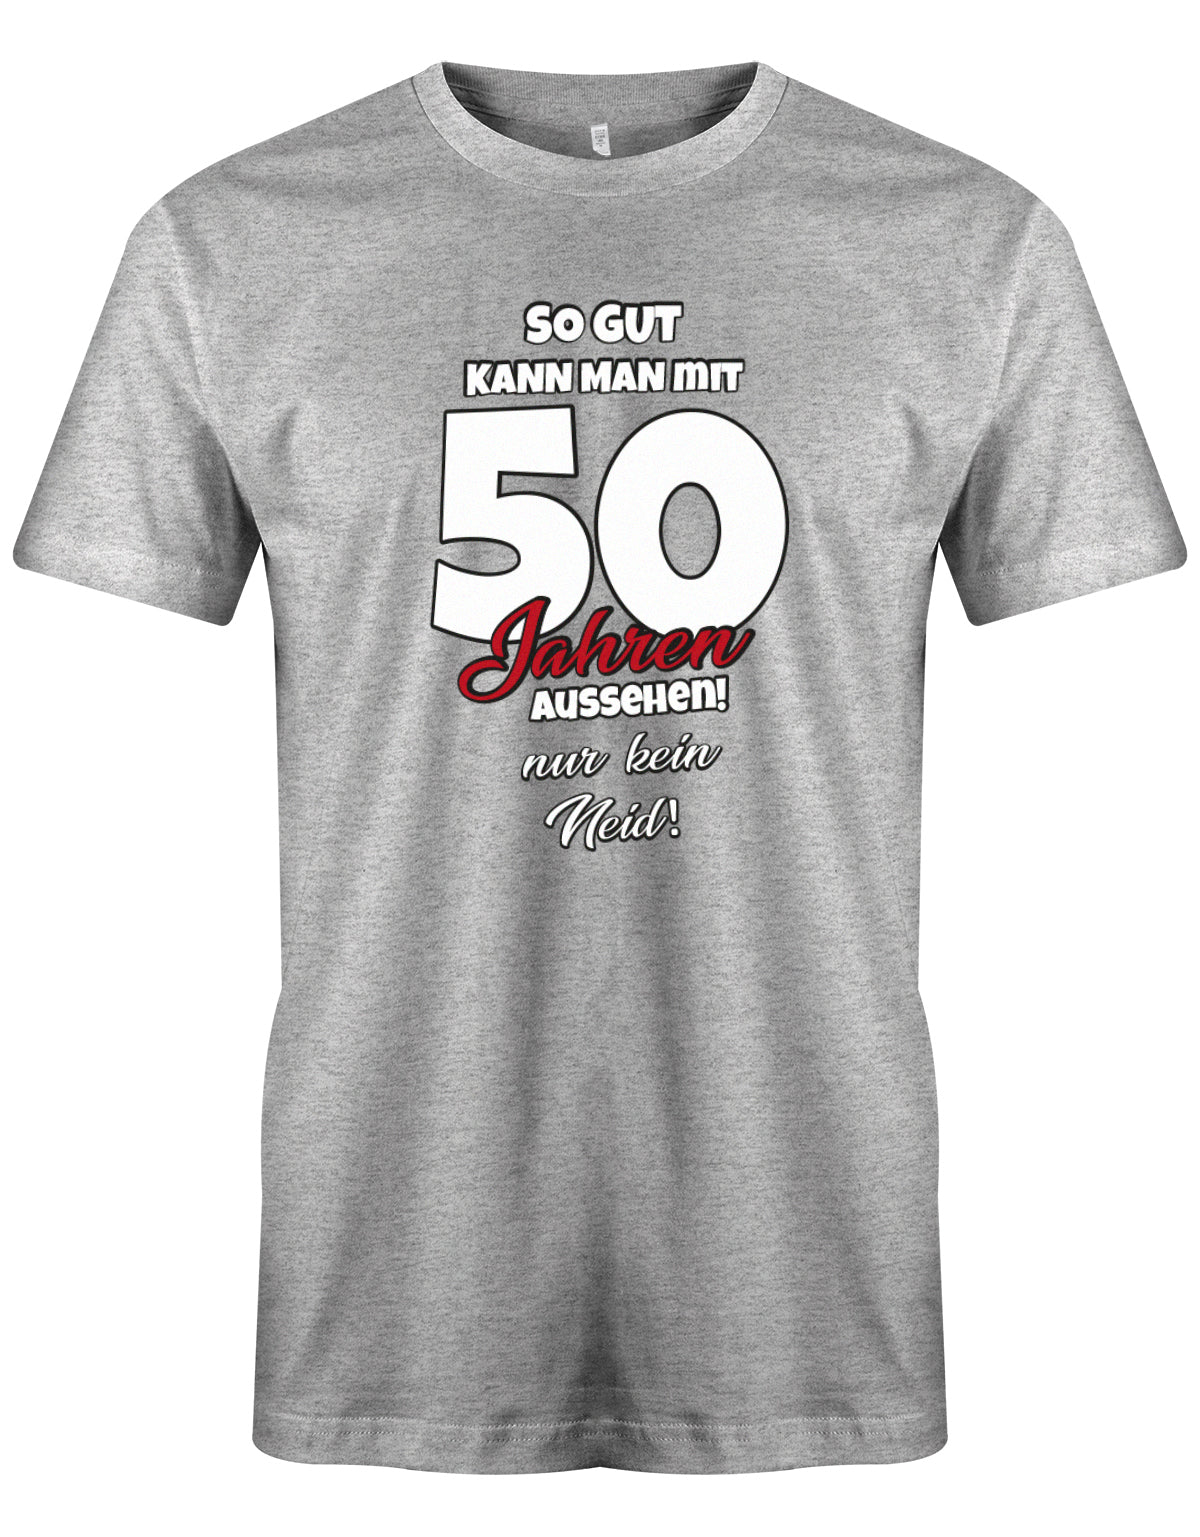 Lustiges T-Shirt zum 50 Geburtstag für den Mann Bedruckt mit So gut kann man mit 50 Jahren aussehen! Nur kein Neid! Grau